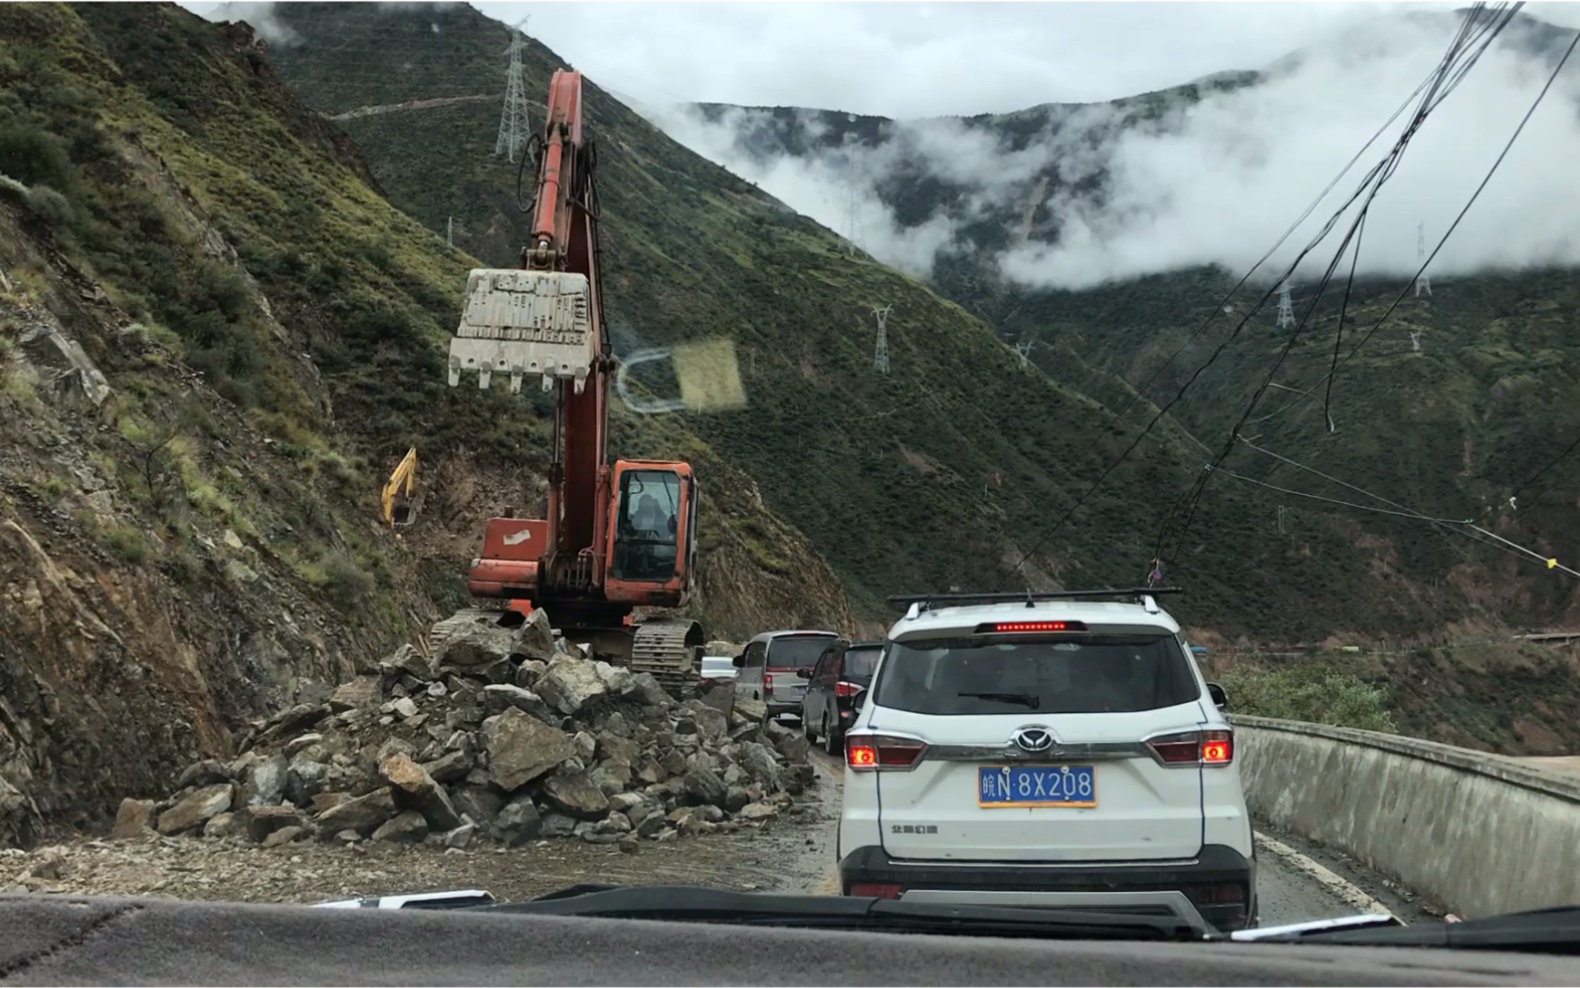 318国道上路况最差的一段路,过了这里,就从西川到西藏了